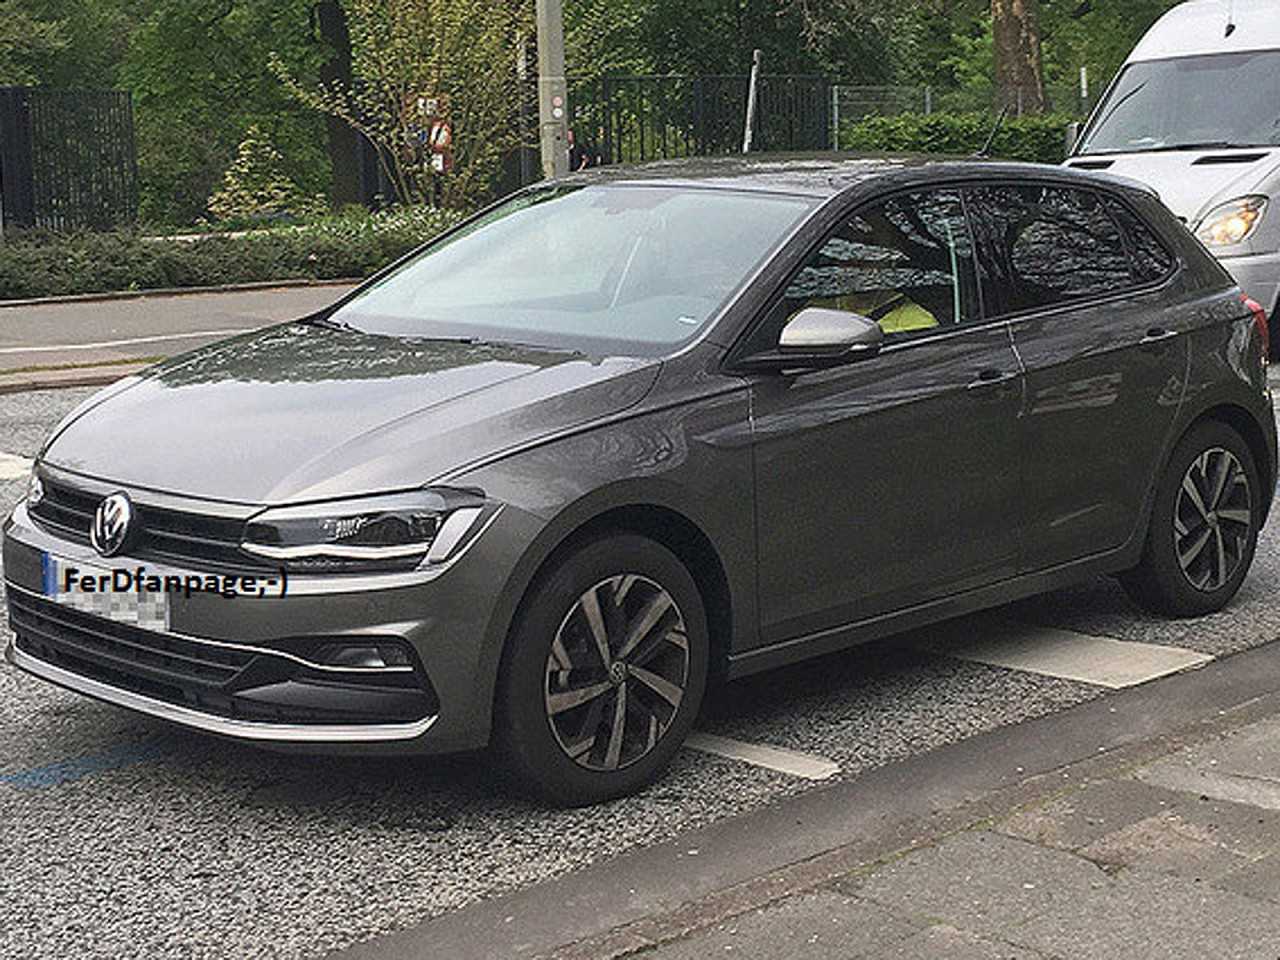 Volkswagen Polo 2018 flagrado sem nenhum disfarce